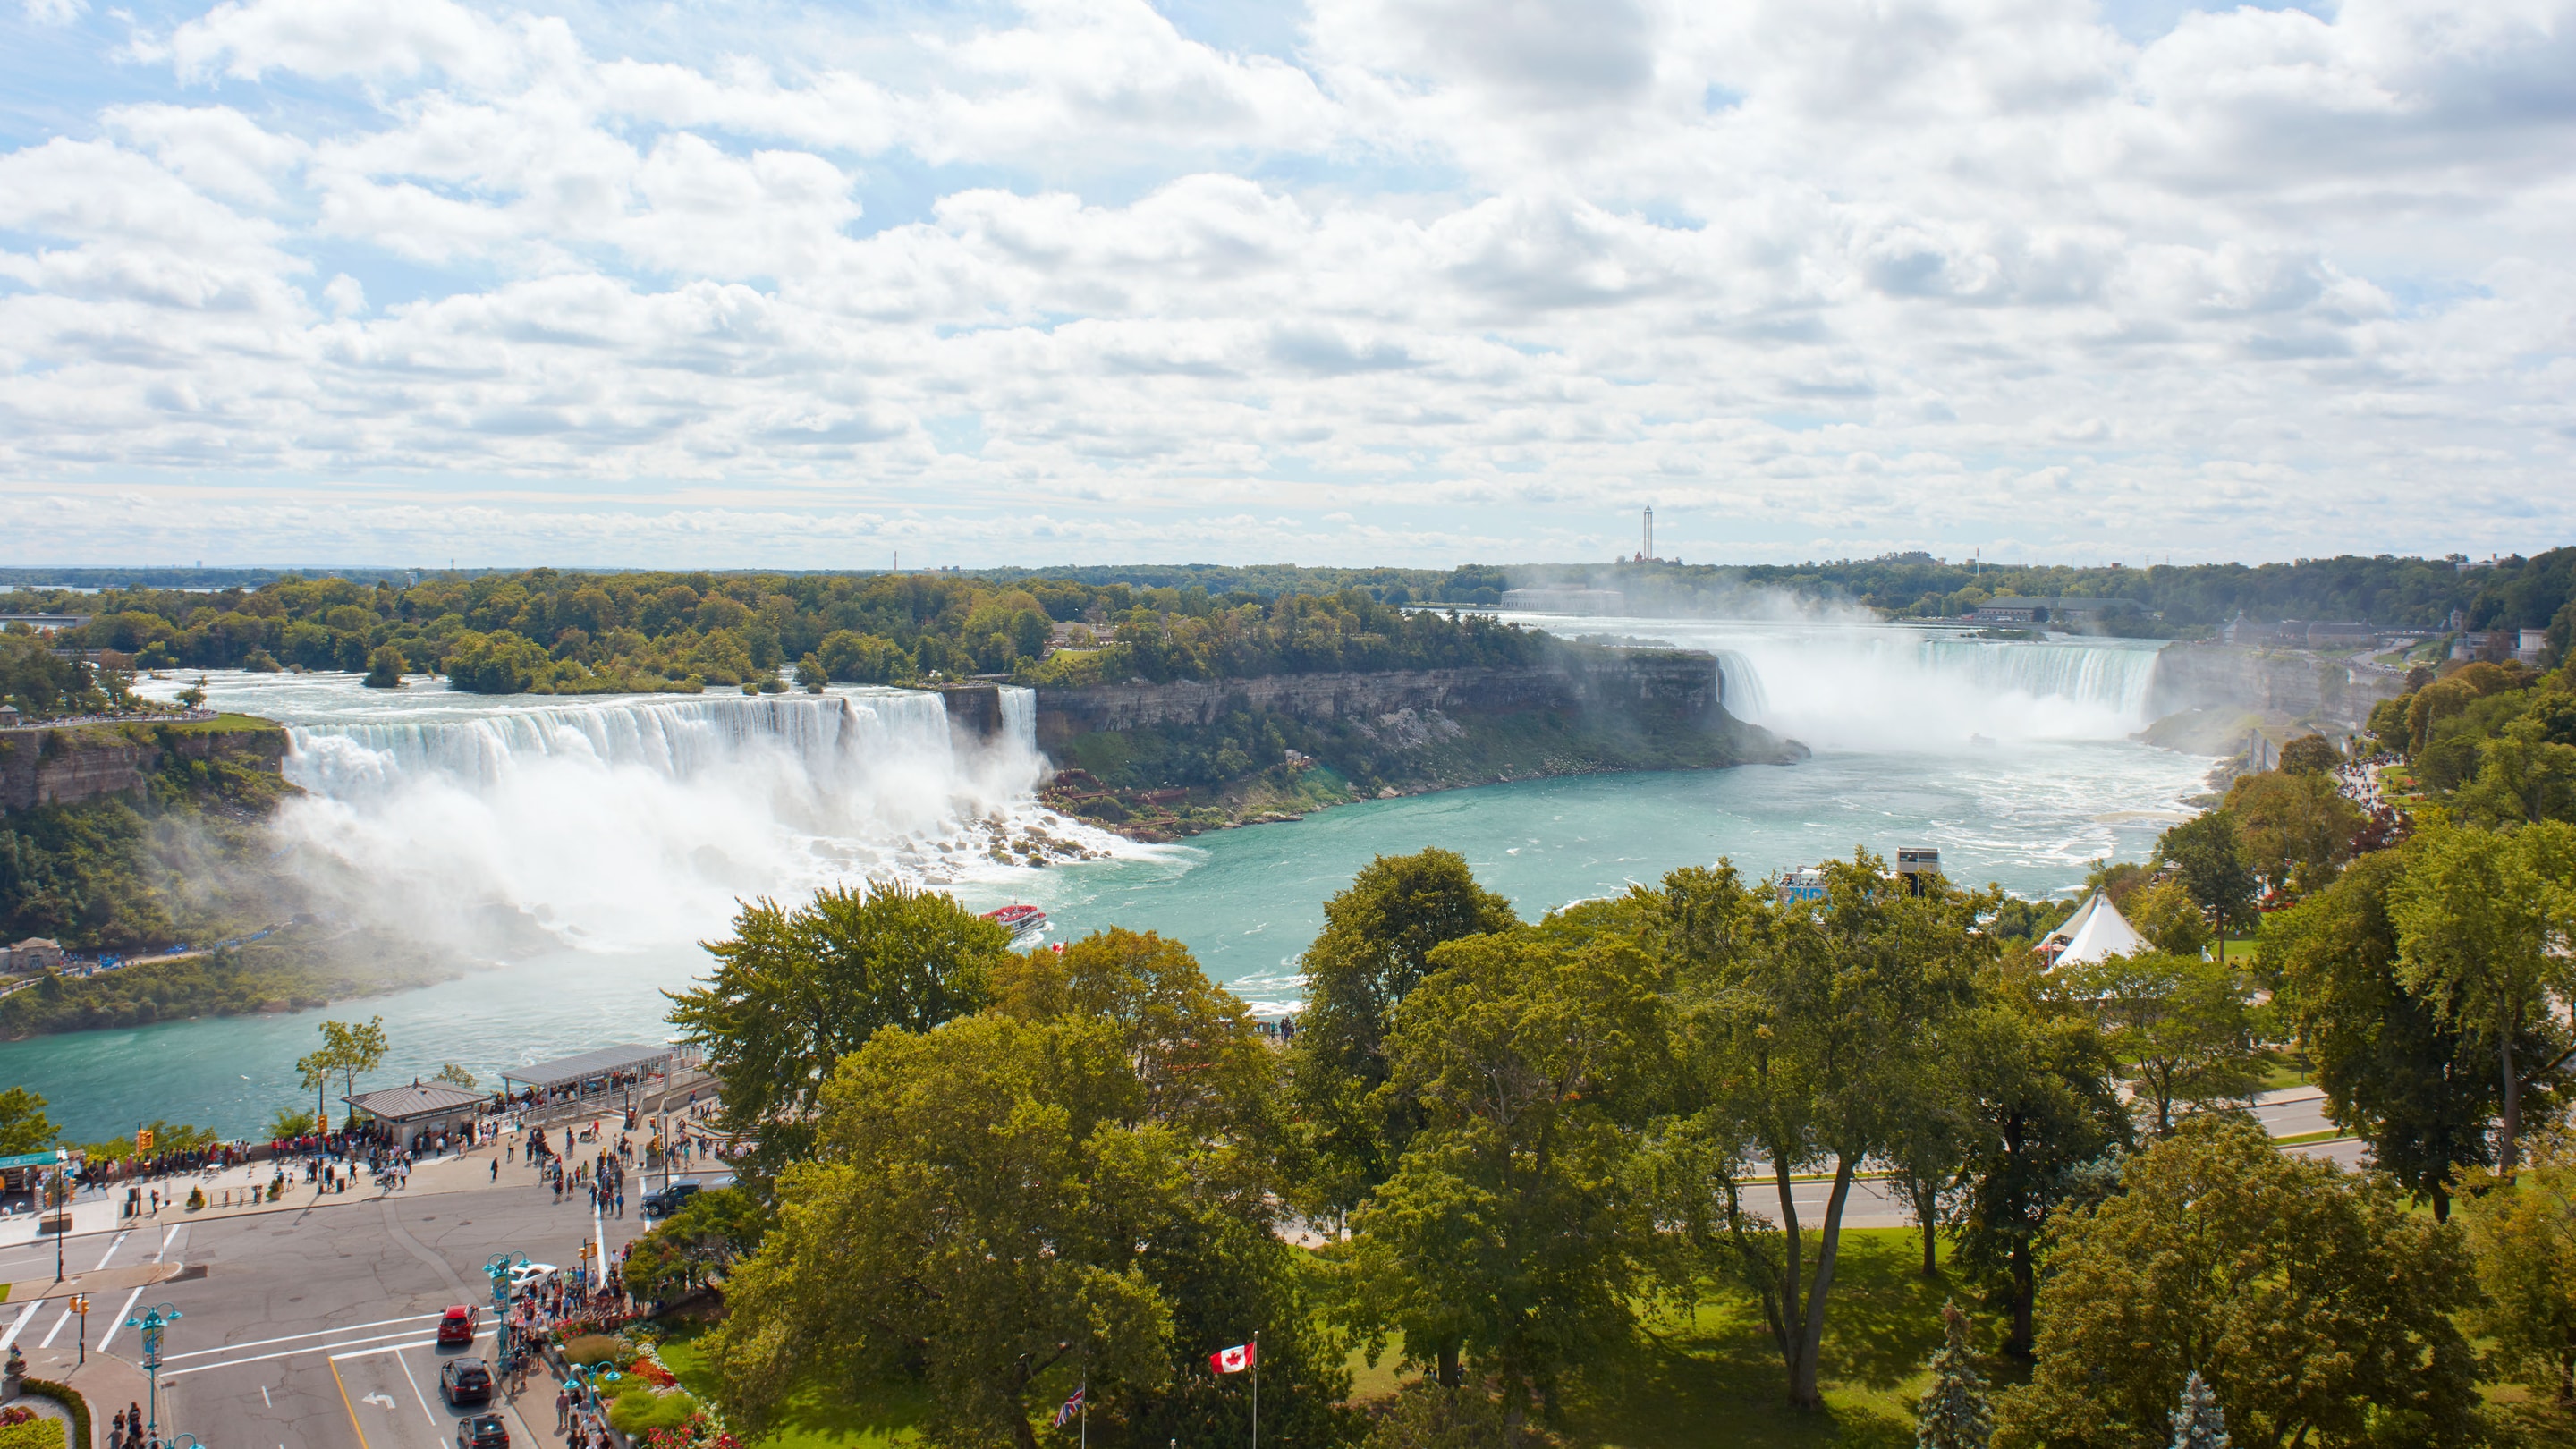 Birdeye view of Niagara falls.